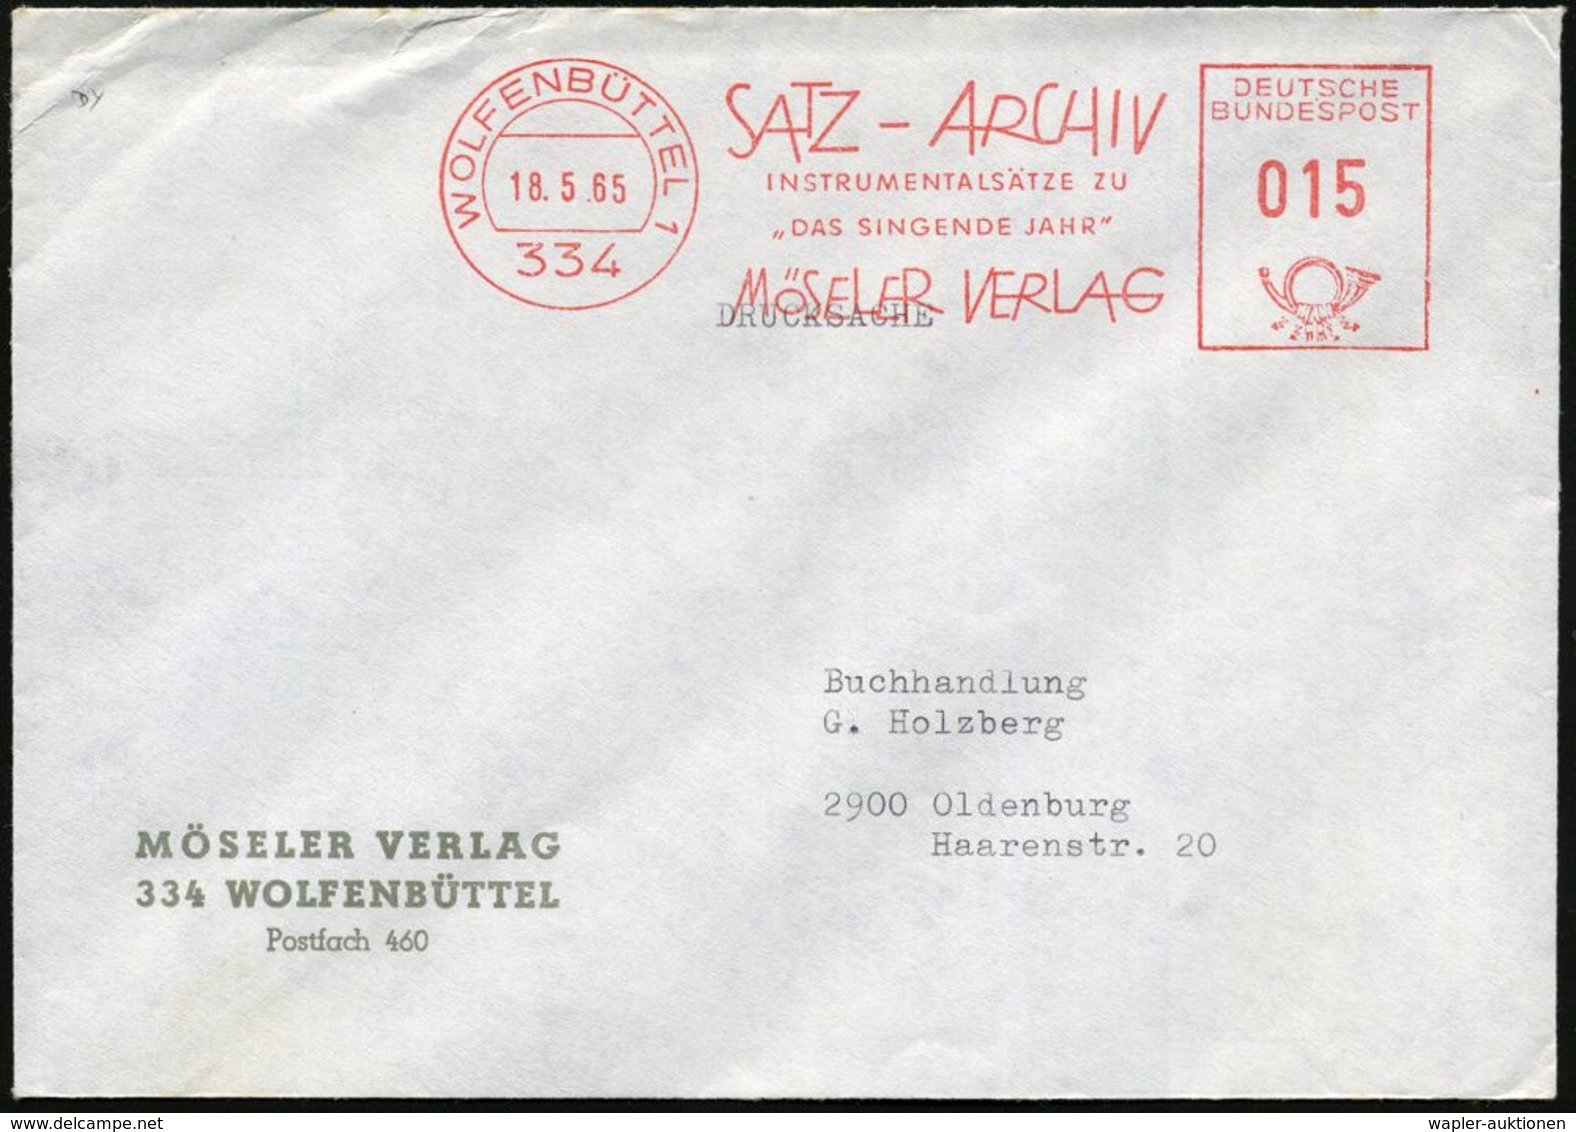 MUSIK-VERLAGE : 334 WOLFENBÜTTEL 1/ SATZ-ARCHIV/ INSTRUMENTALSÄTZE ZU/ "DAS SINGENDE JAHR"/ MÖSELER VERLAG 1965 (18.5.)  - Musique